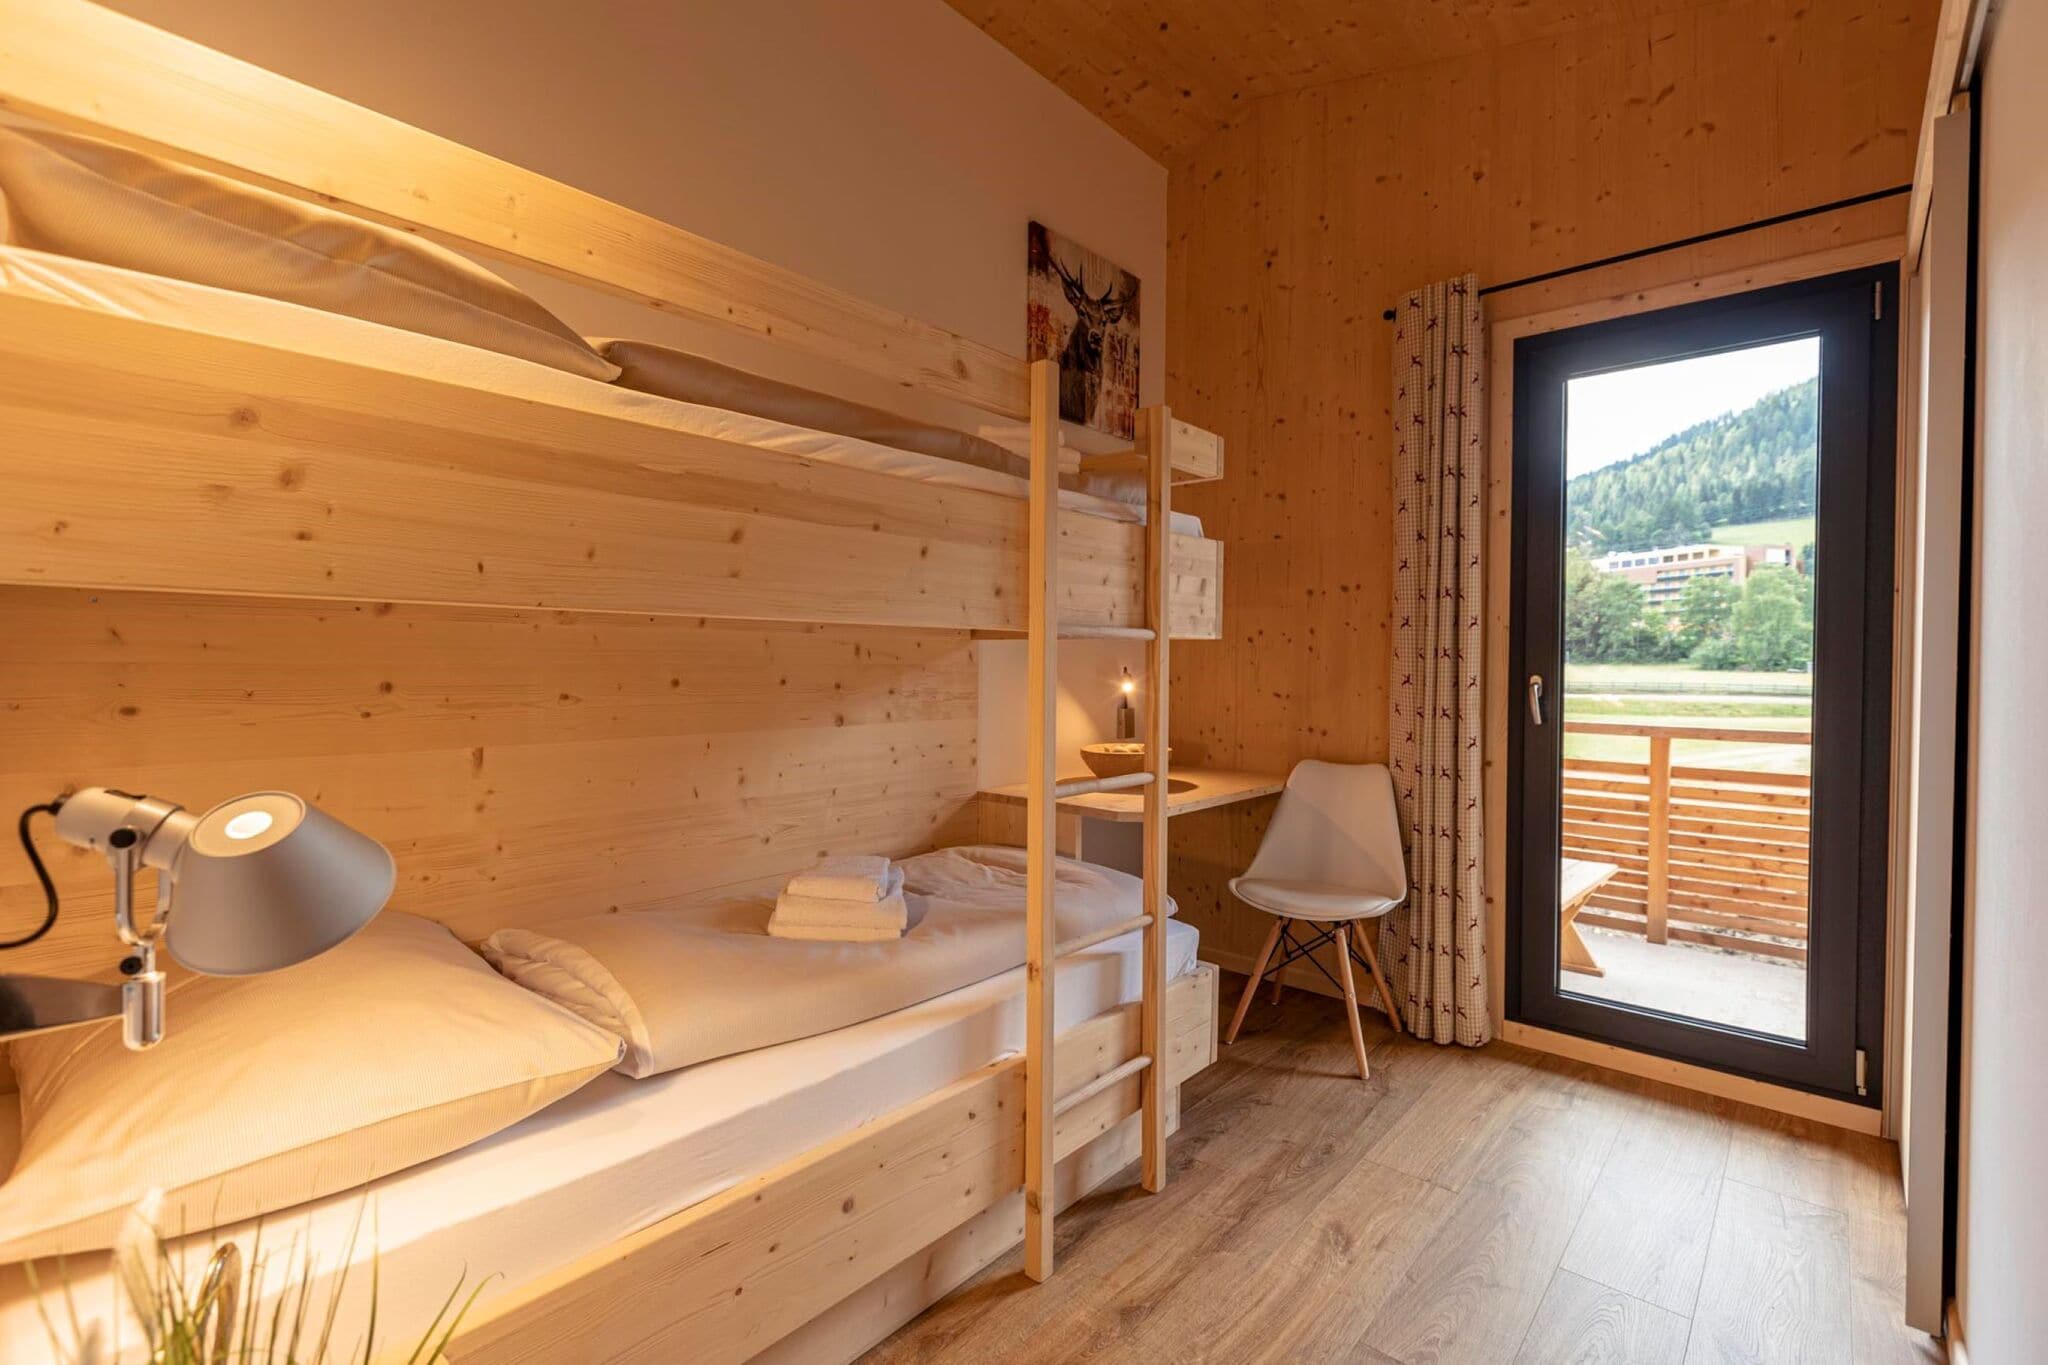 Elegant Apartment in Kreischberg on Ski Resort